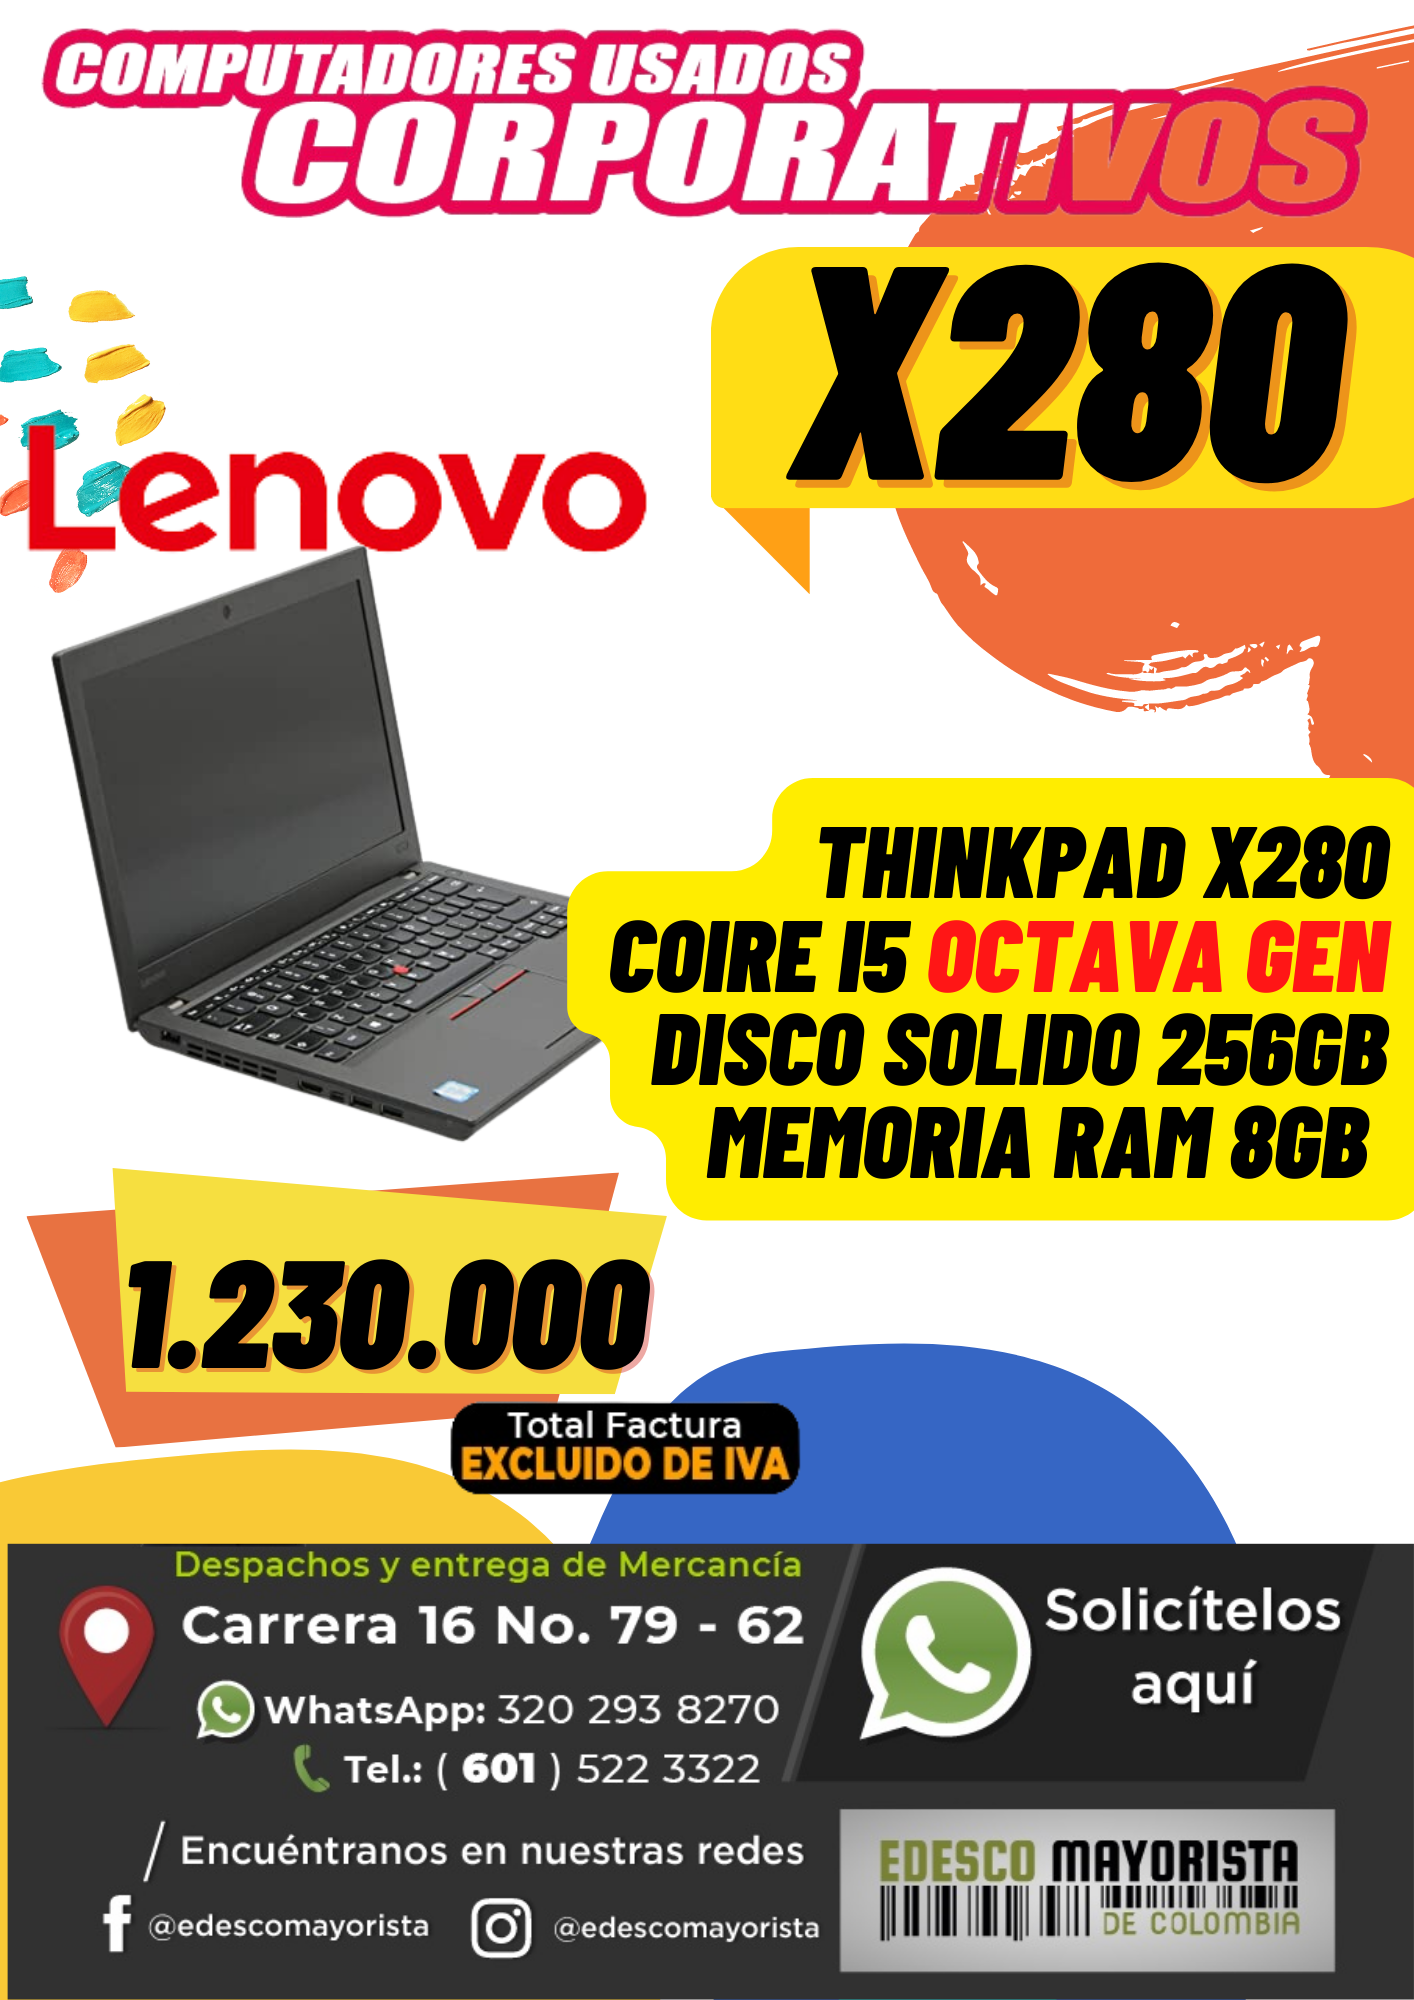 Lenovo x280